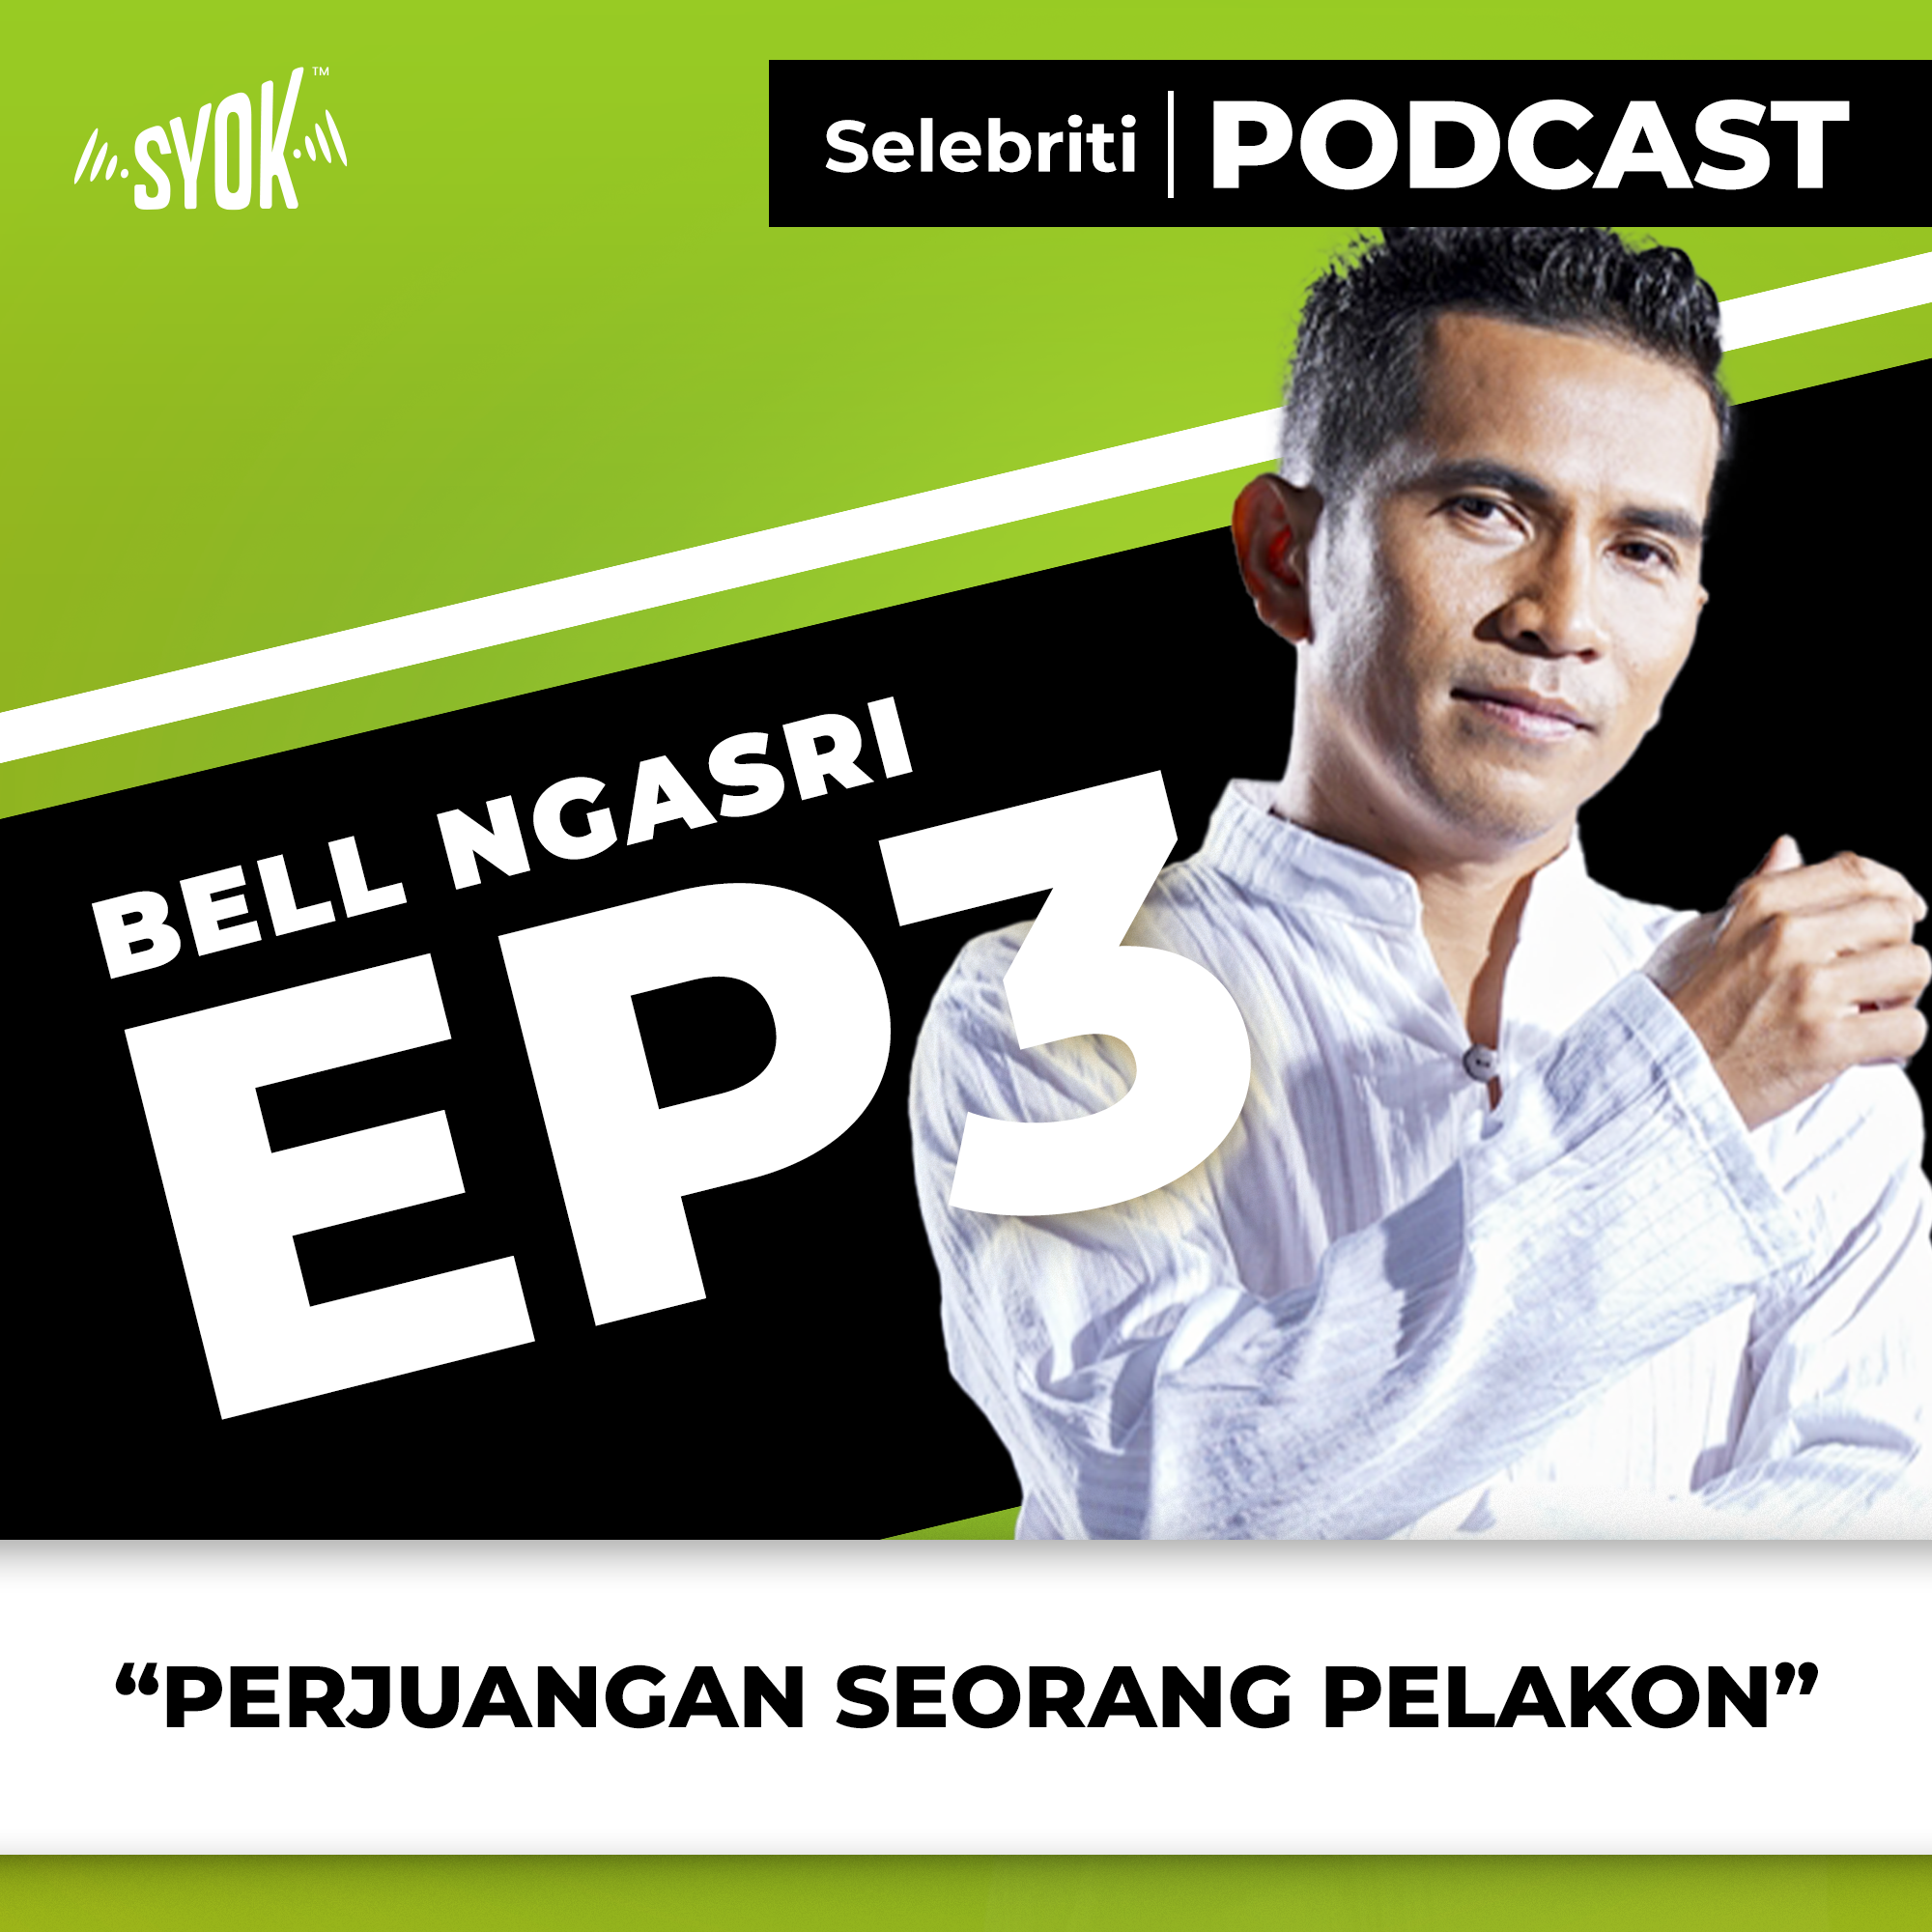 Perjuangan Seorang Pelakon| Selebriti Podcast Bell Ngasri EP3